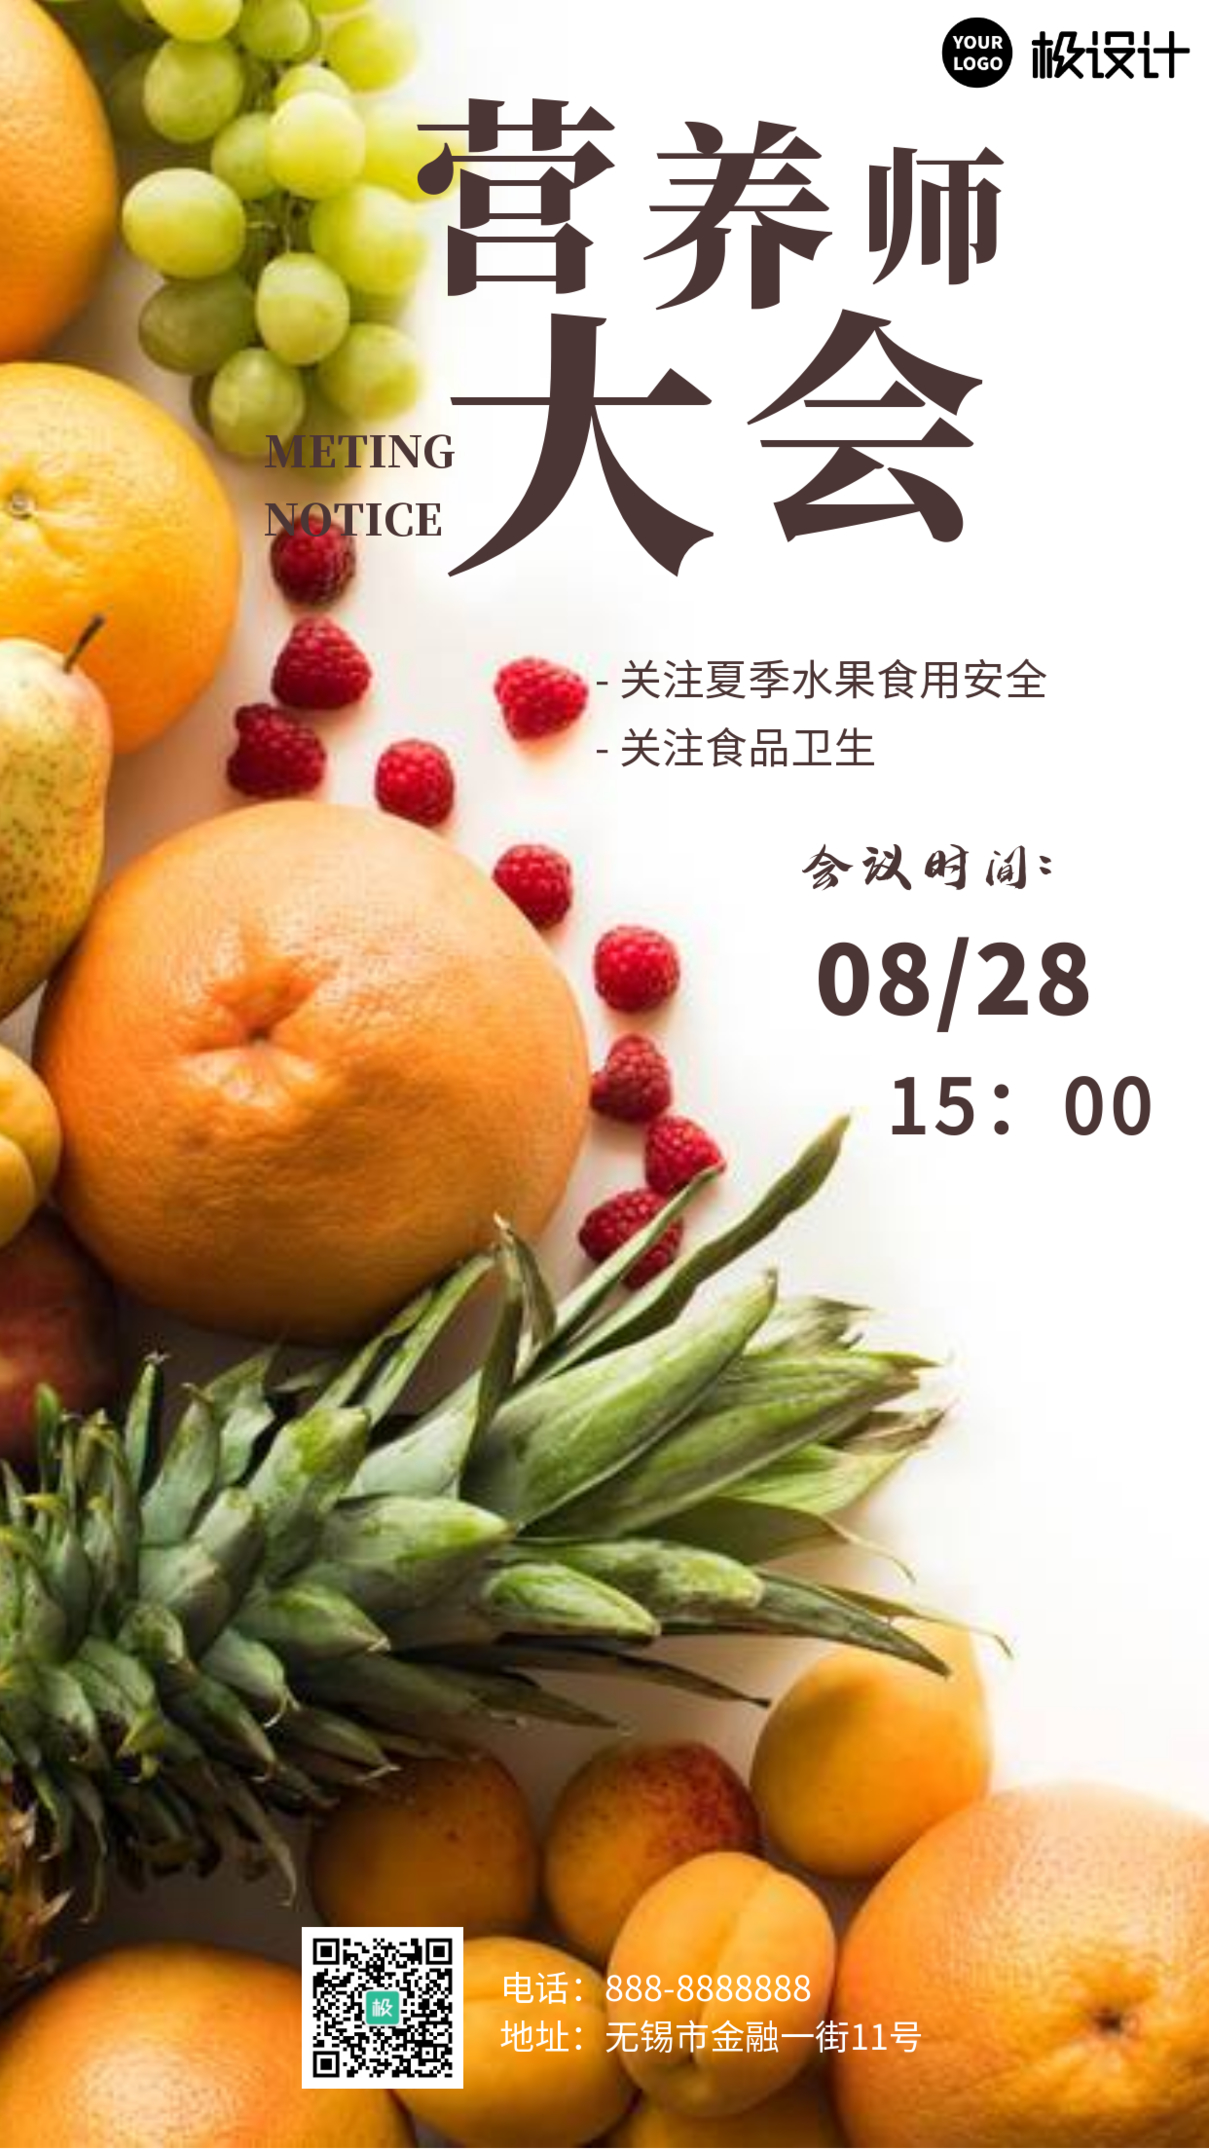 营养师大会荔枝简约水果摄影图海报